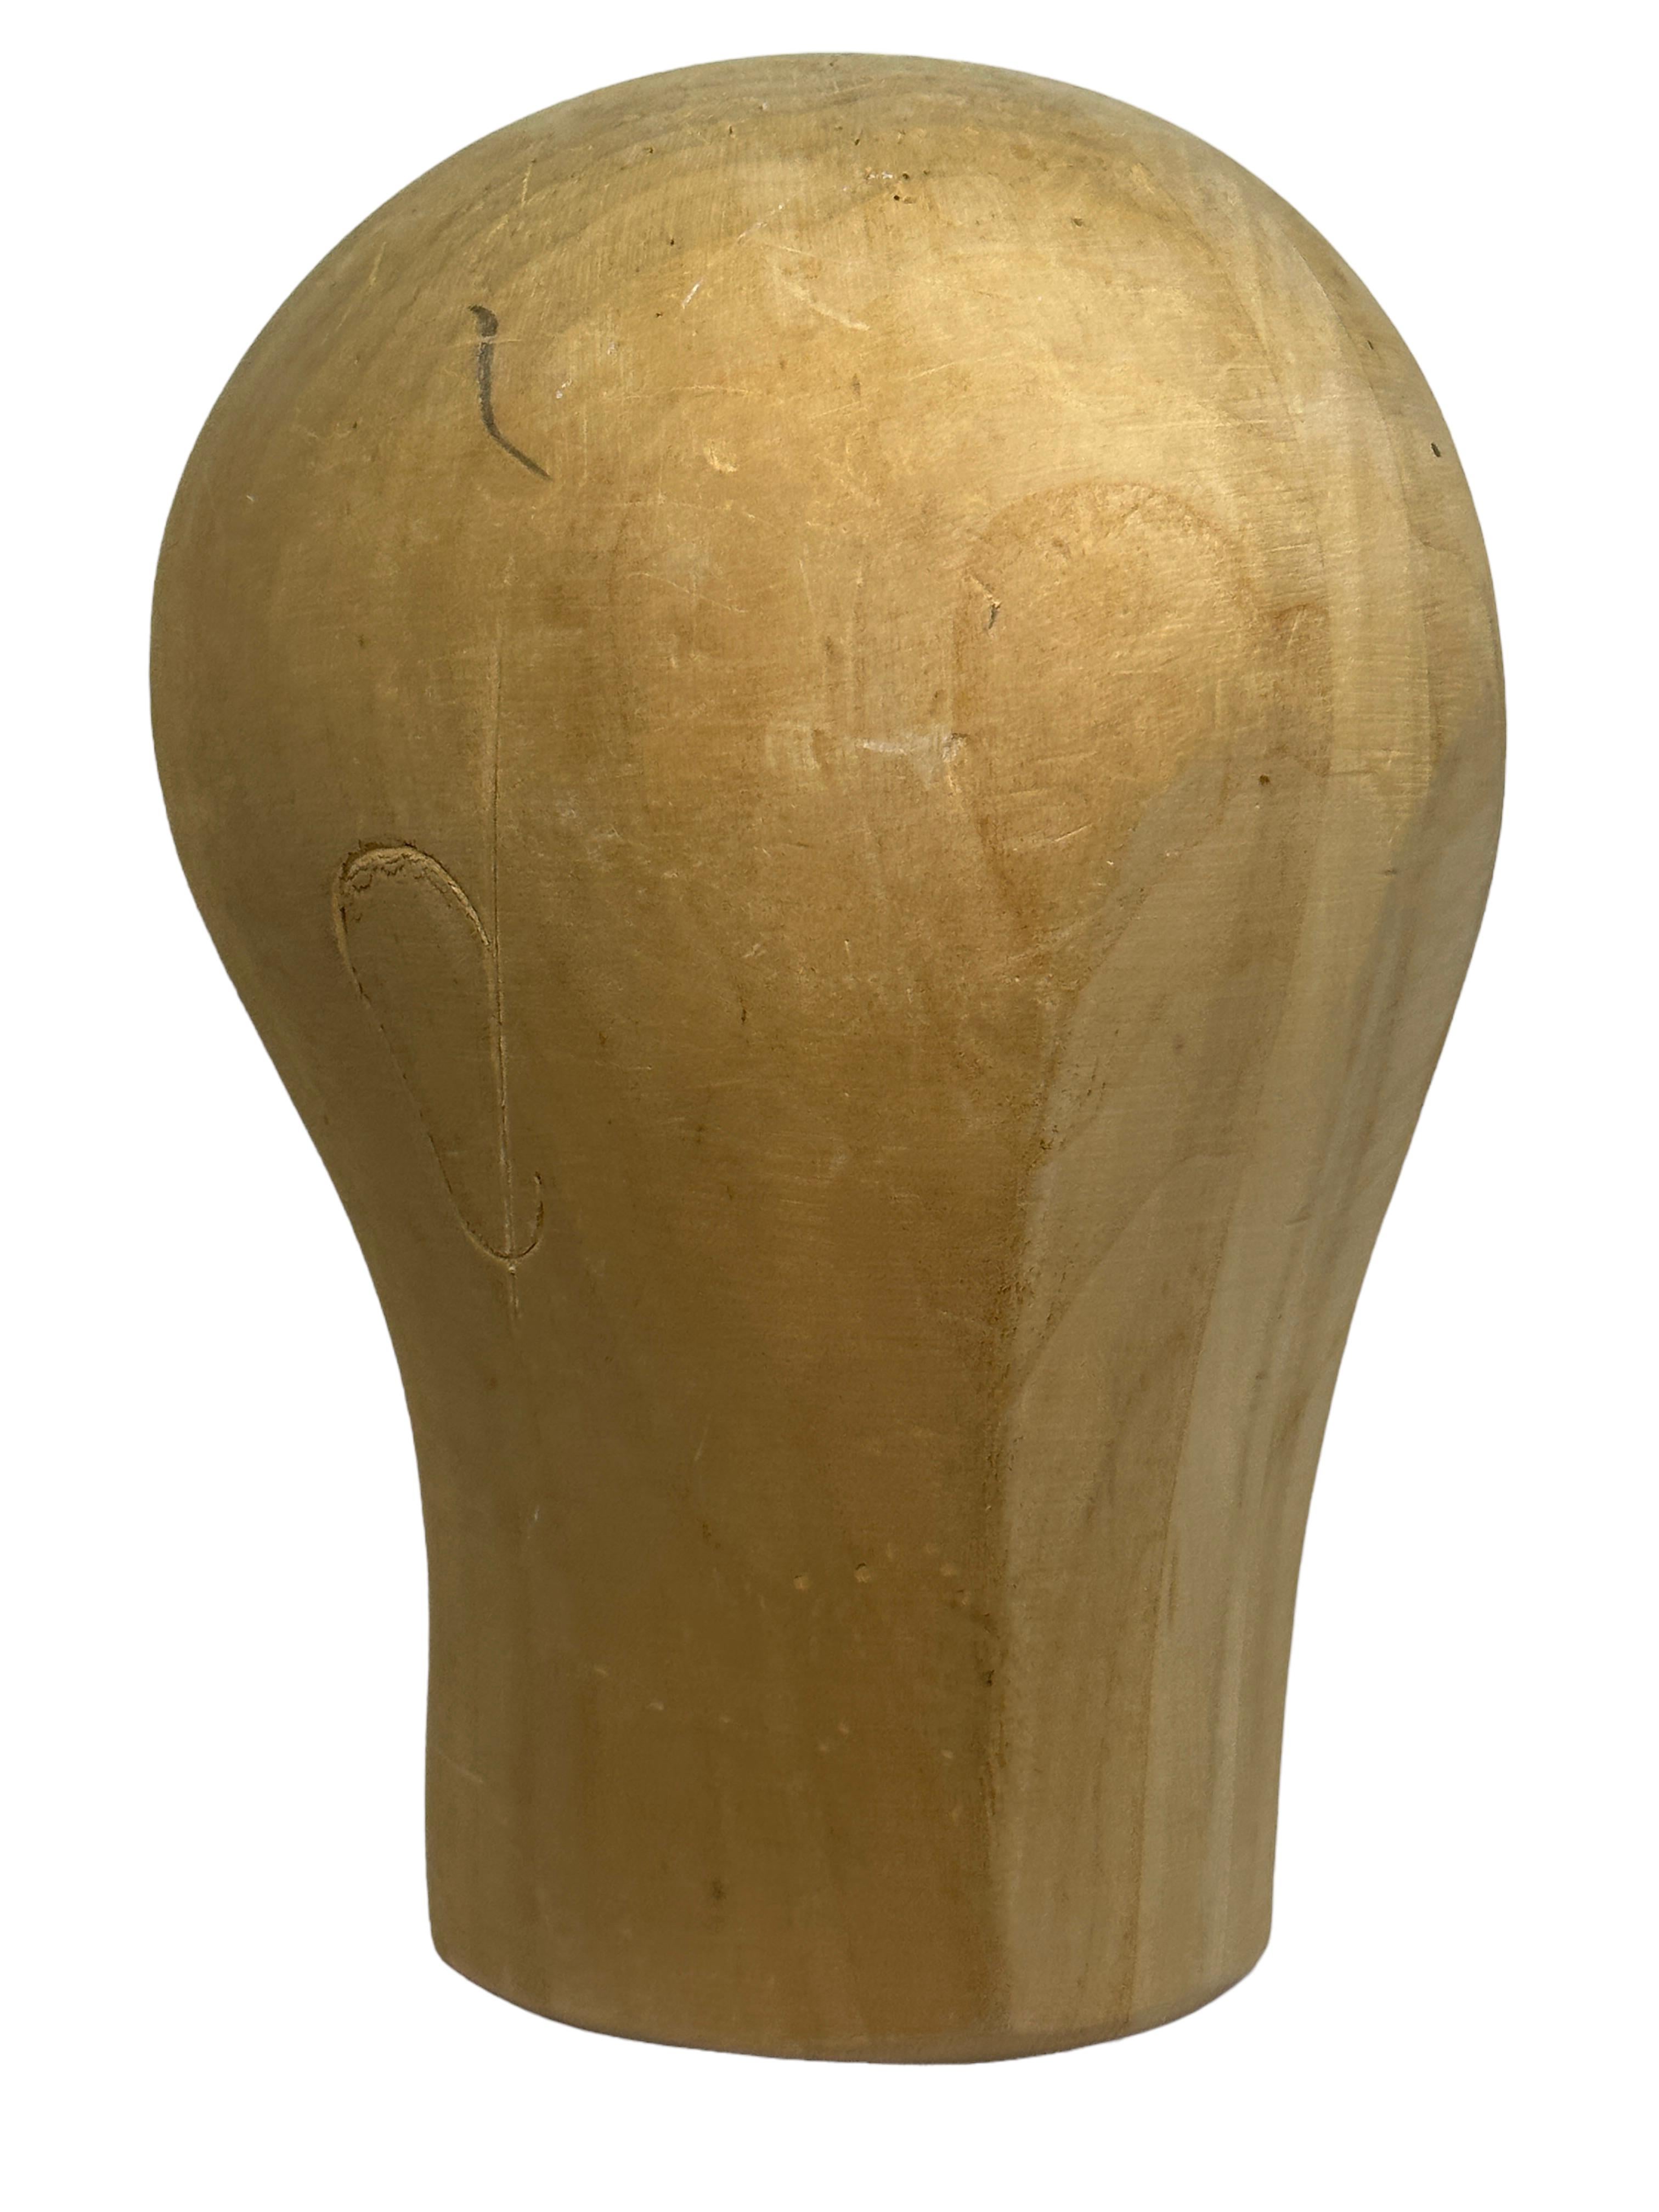 Bezaubernder einzigartiger holzgeschnitzter Kopf. Deutschland, 1960er Jahre. Idealer Dekorationsartikel, der zum Ausstellen und Herstellen von Hüten verwendet wird. Handgeschnitzt aus Holz. Ein schönes Ausstellungsstück für jeden Raum. Gefunden bei